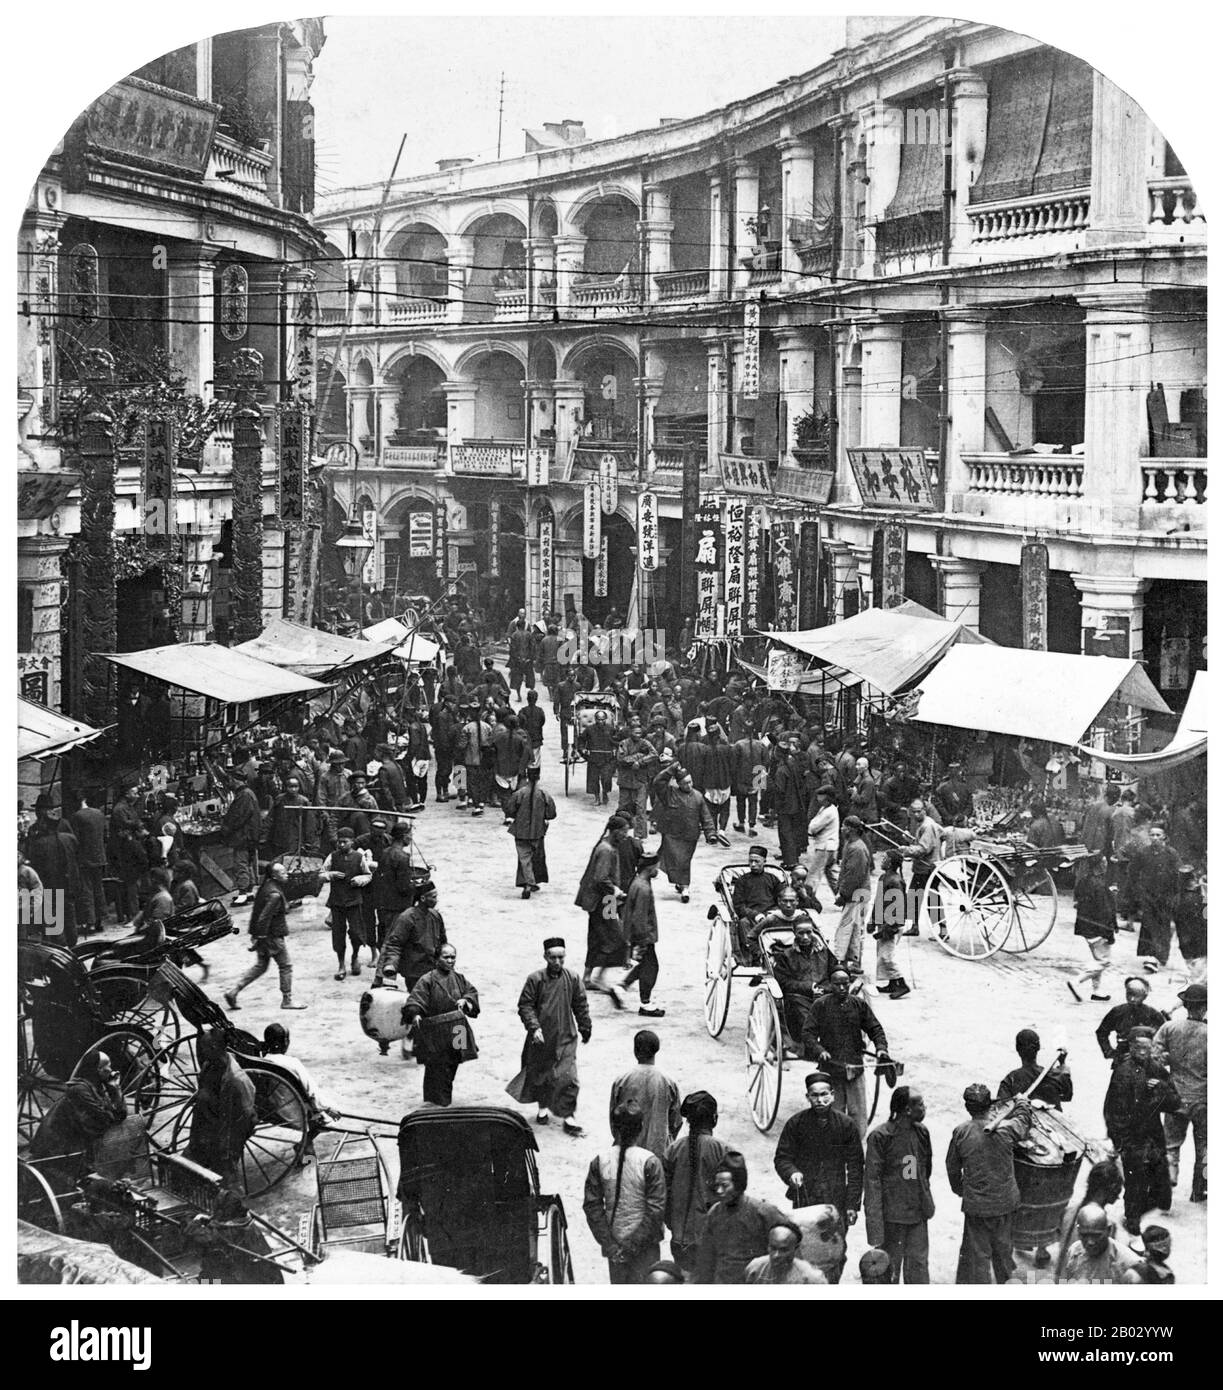 Après la première guerre De L'Opium (1839–1842), Hong Kong est devenue une colonie britannique avec la cession perpétuelle de l'île de Hong Kong, suivie de la péninsule de Kowloon en 1860 et d'un bail de 99 ans des nouveaux territoires en 1898. Après avoir été occupé par le Japon pendant la seconde Guerre mondiale (1941-1945), les Britanniques ont repris le contrôle jusqu'au 30 juin 1997. Suite aux négociations entre la Chine et la Grande-Bretagne, Hong Kong a été transféré en République Populaire de Chine dans le cadre de la Déclaration conjointe sino-britannique de 1984. Le territoire est devenu la première région administrative spéciale de la Chine au niveau provincial avec un haut degré d'autonomie o Banque D'Images